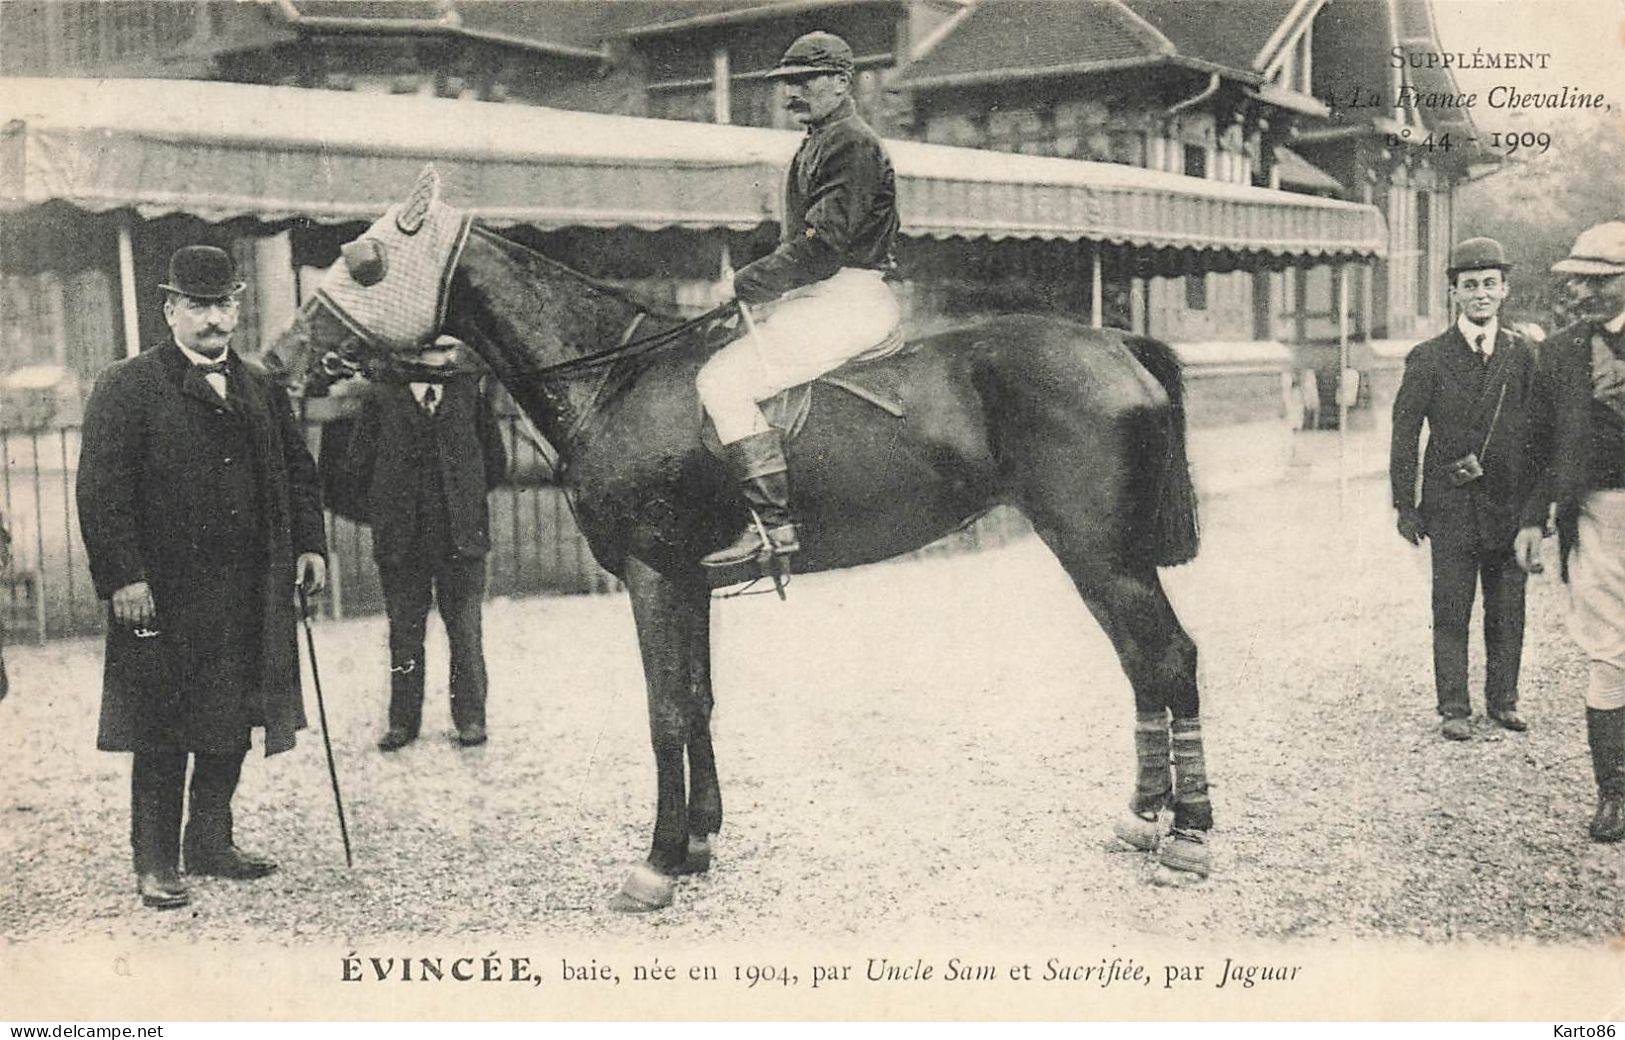 Hippisme * La France Chevaline N°44 1909 * Concours Centrale Hippique * Cheval EVINCEE Baie Jockey - Horse Show